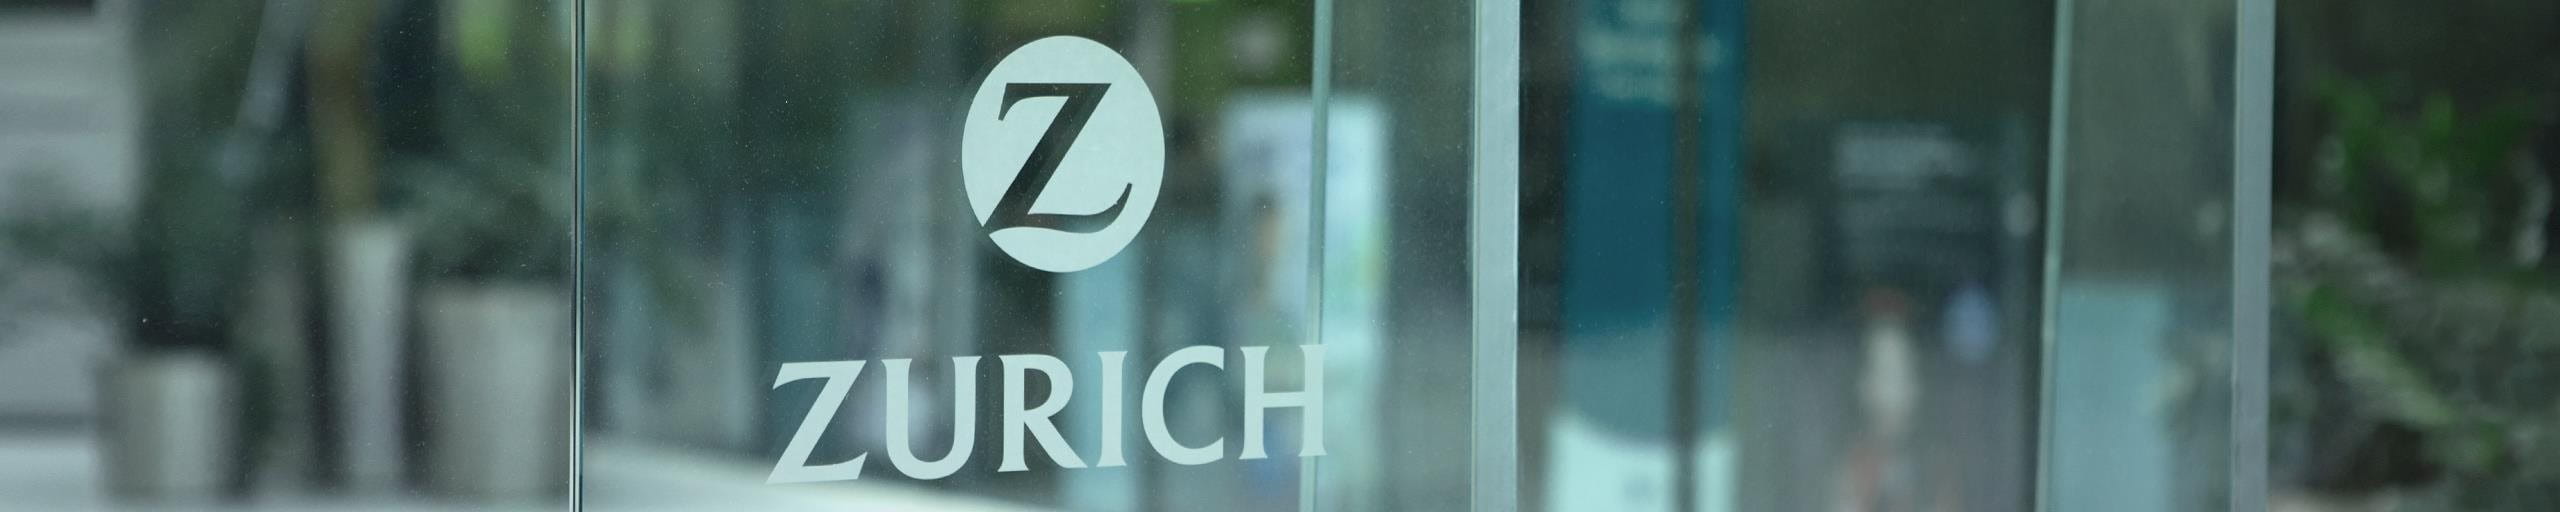 Une fenêtre avec le logo de la Zurich.